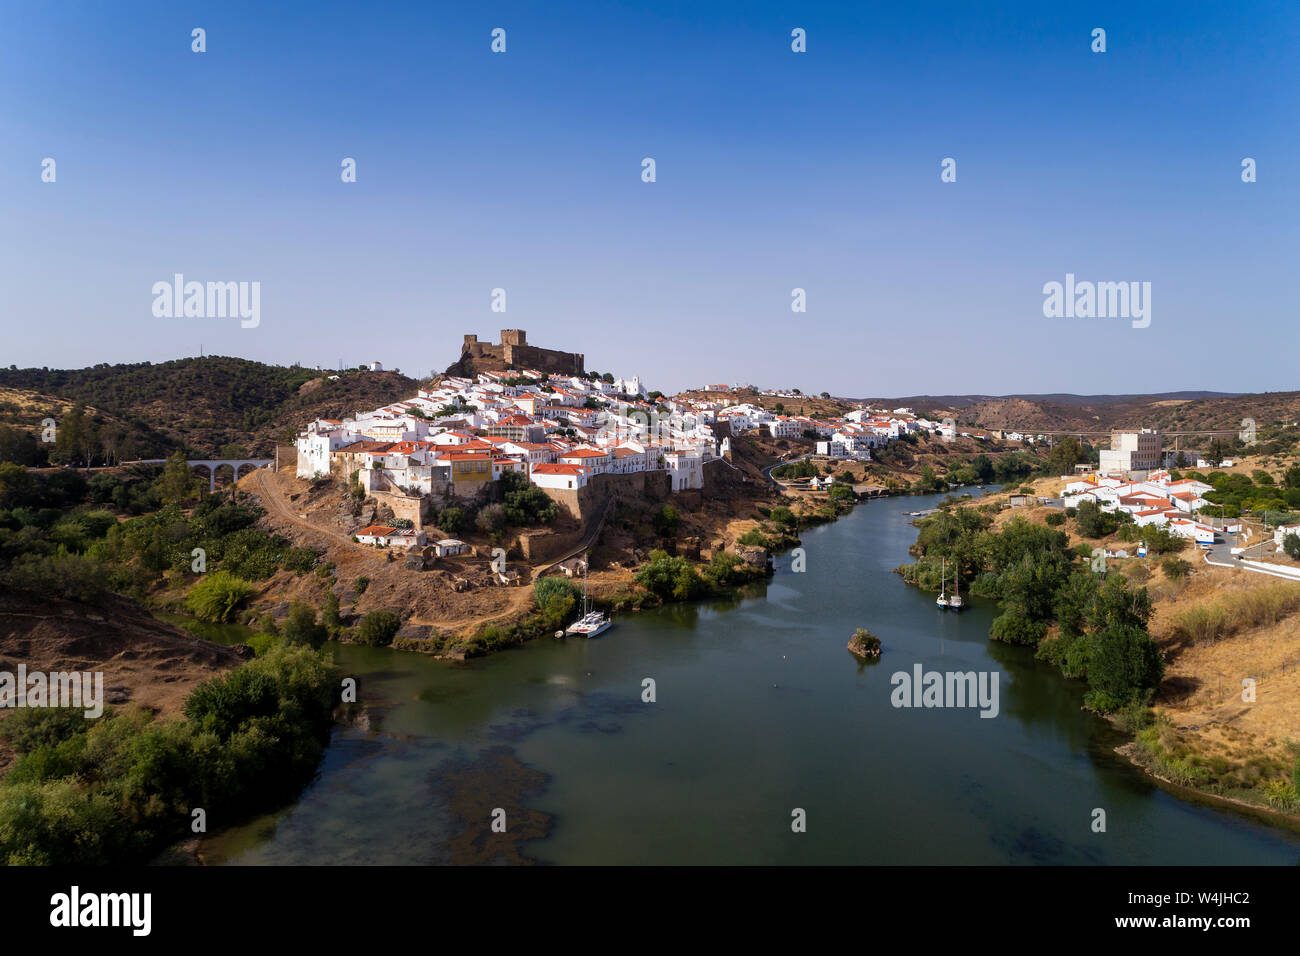 Luftaufnahme des schönen Dorfes Mértola im Alentejo, Portugal; Konzept für Reisen in Portugal und die portugiesischen historische Dörfer. Stockfoto